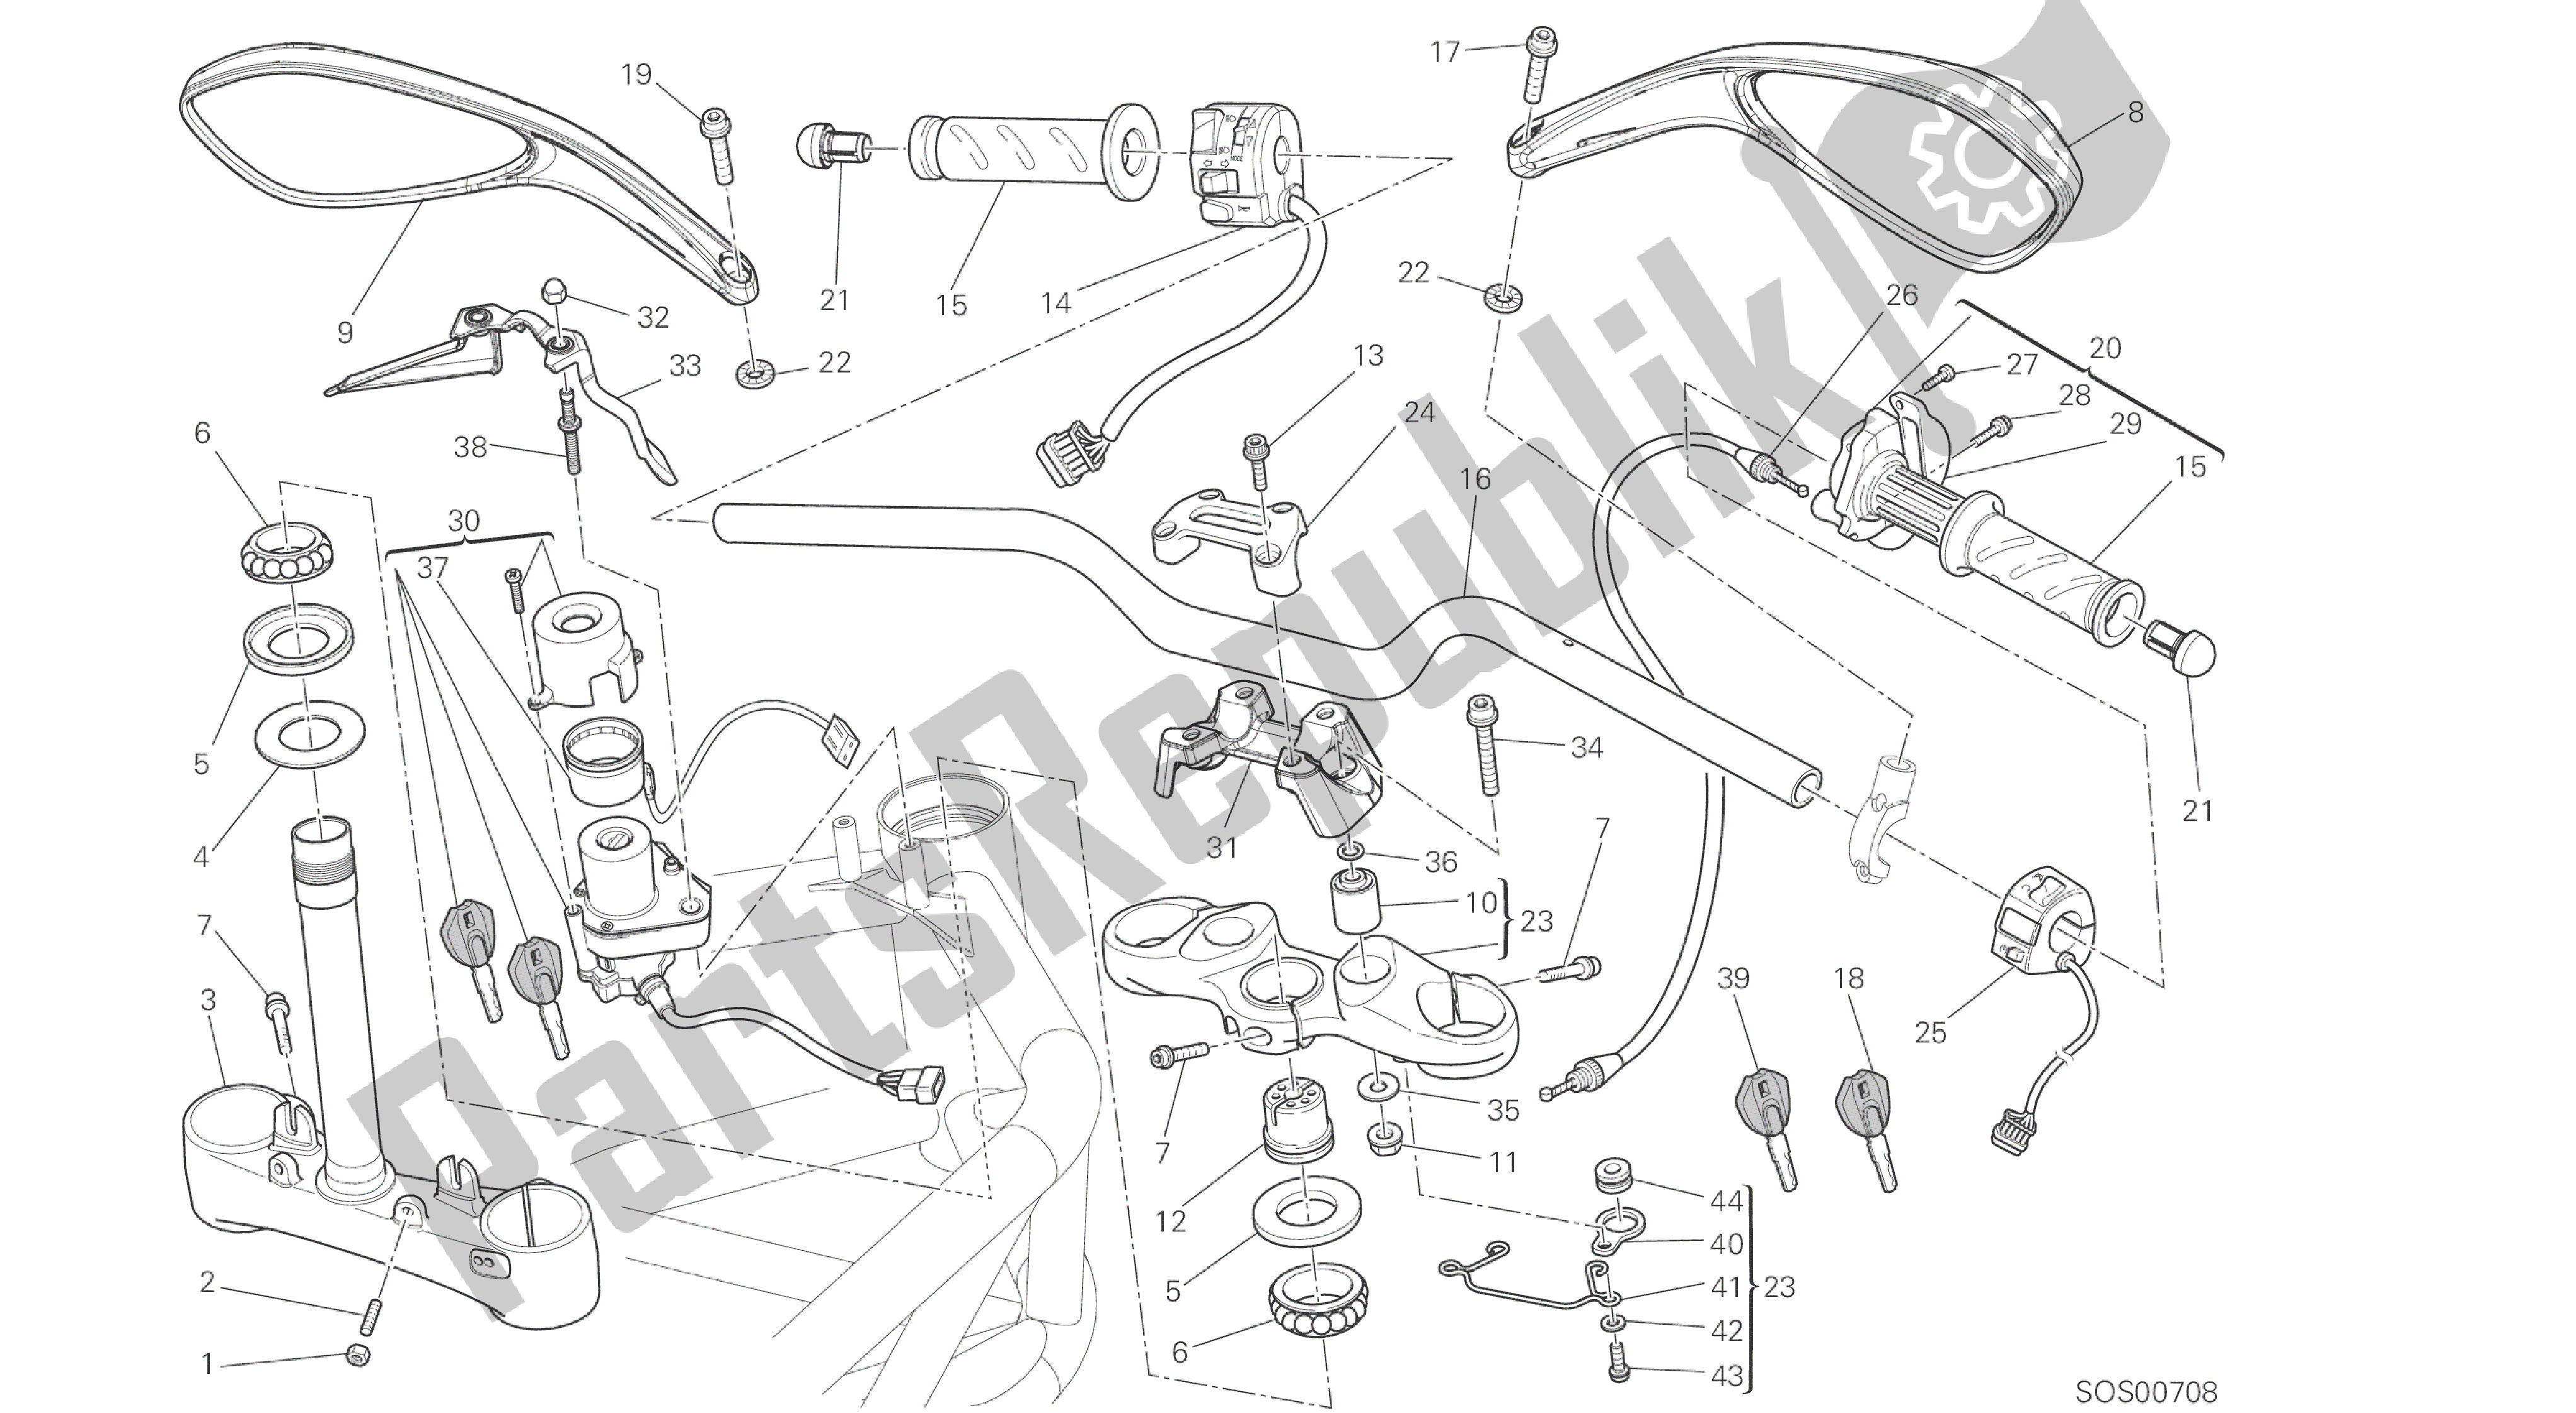 Alle onderdelen voor de Tekening 026 - Stuur [mod: M796 Abs; Xst: Aus, Bra, Eur, Jap, Twn] Groepsframe van de Ducati Monster ABS 796 2014